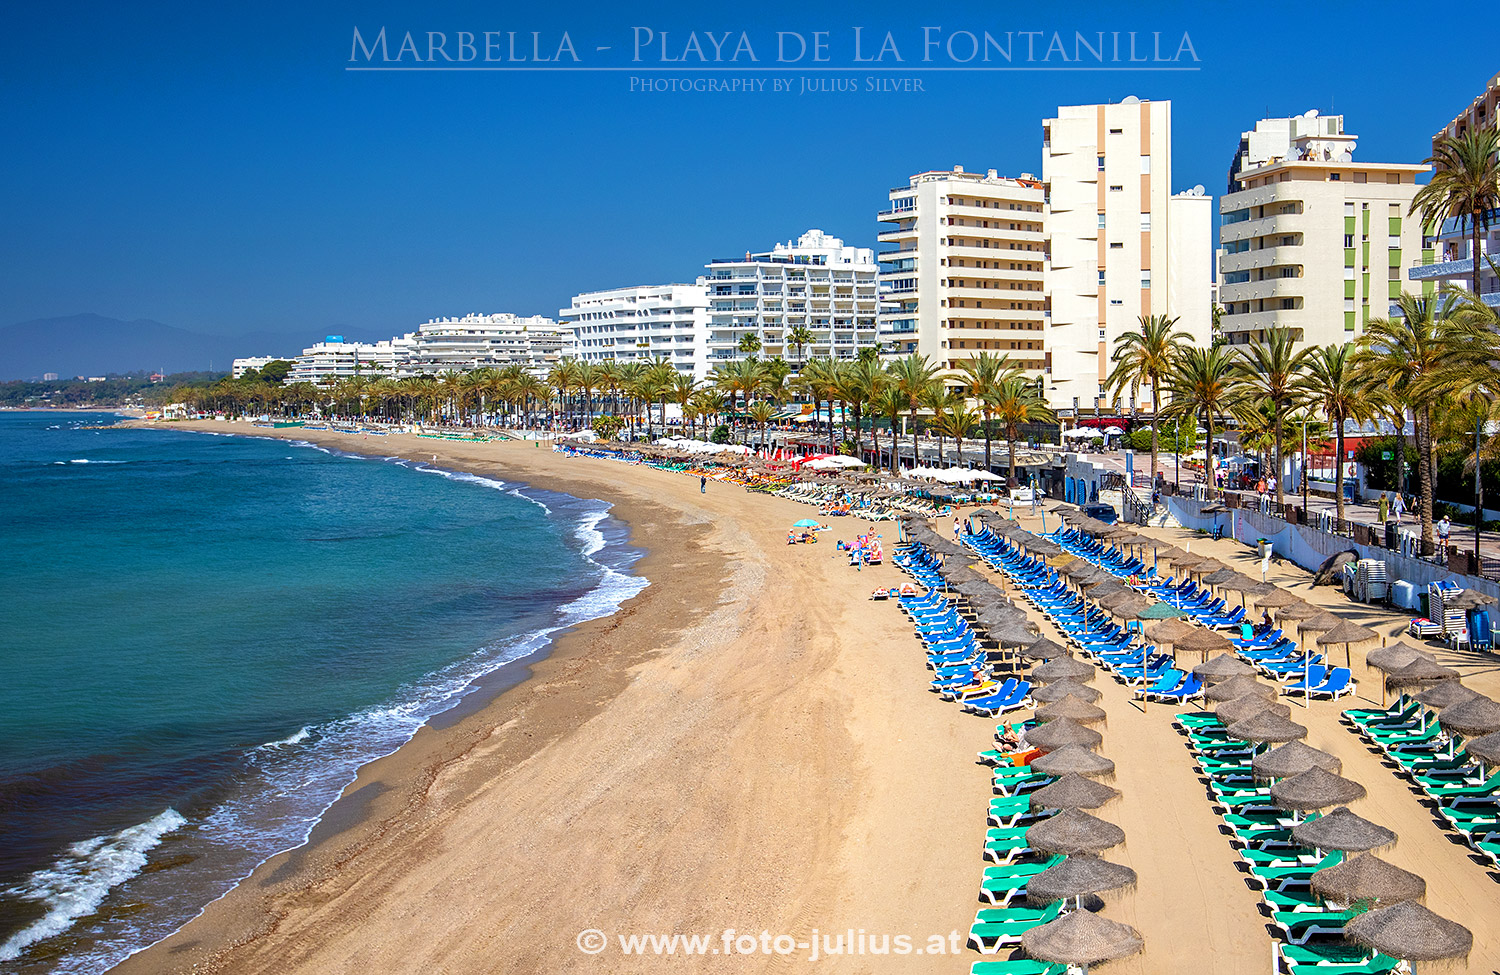 127a_Marbella_Playa_La_Fontanilla.jpg, 670kB